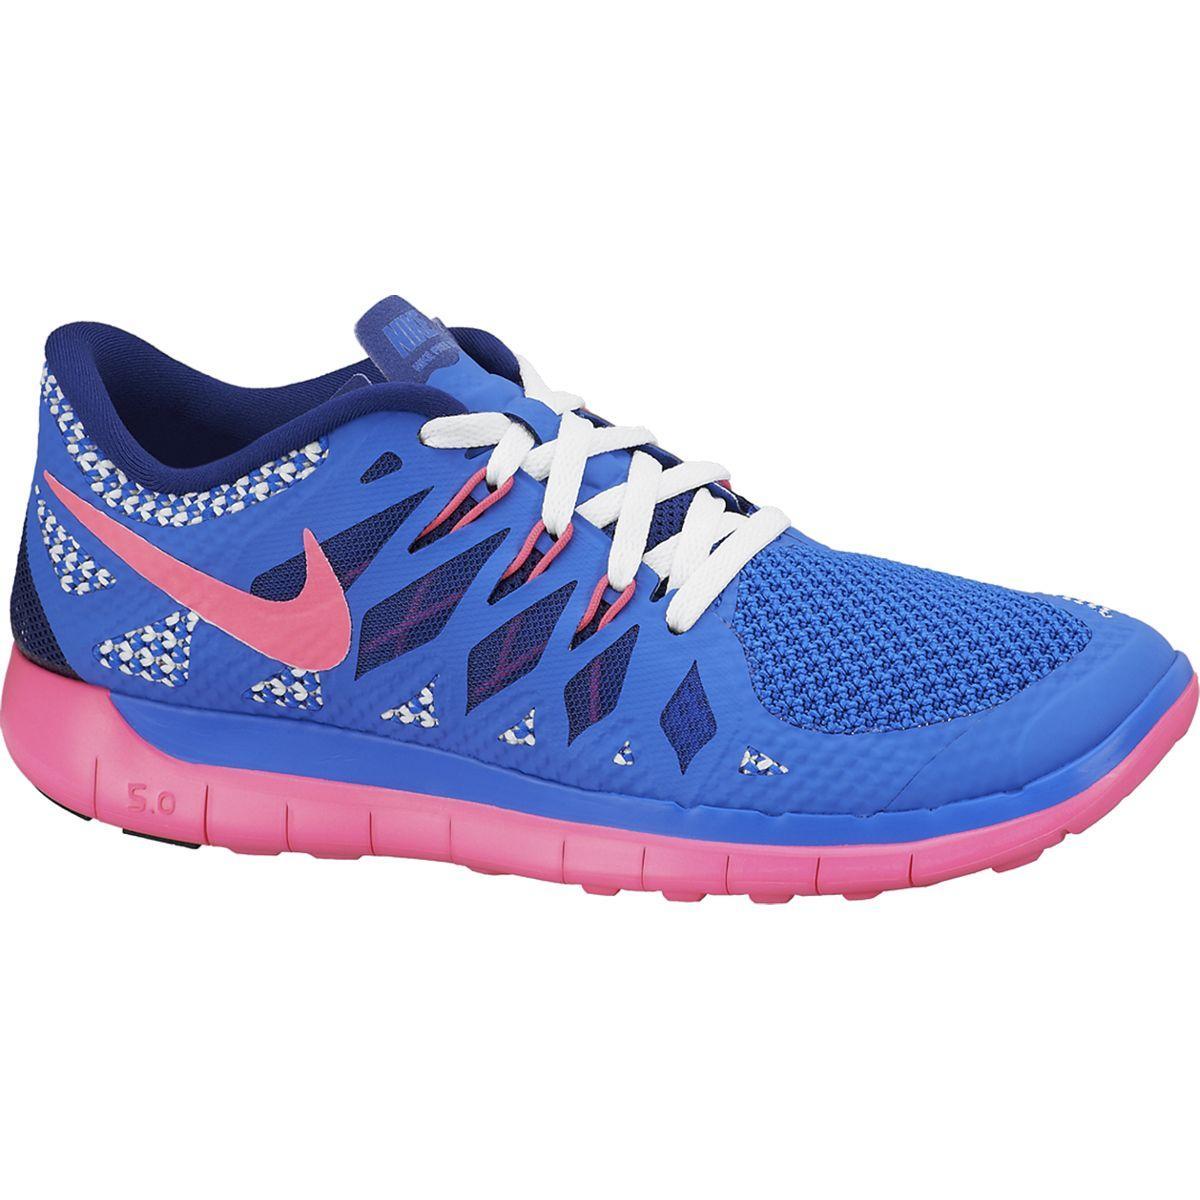 Nike Girls Free 5.0+ Running Shoes - Hyper Cobalt/Pink - Tennisnuts.com